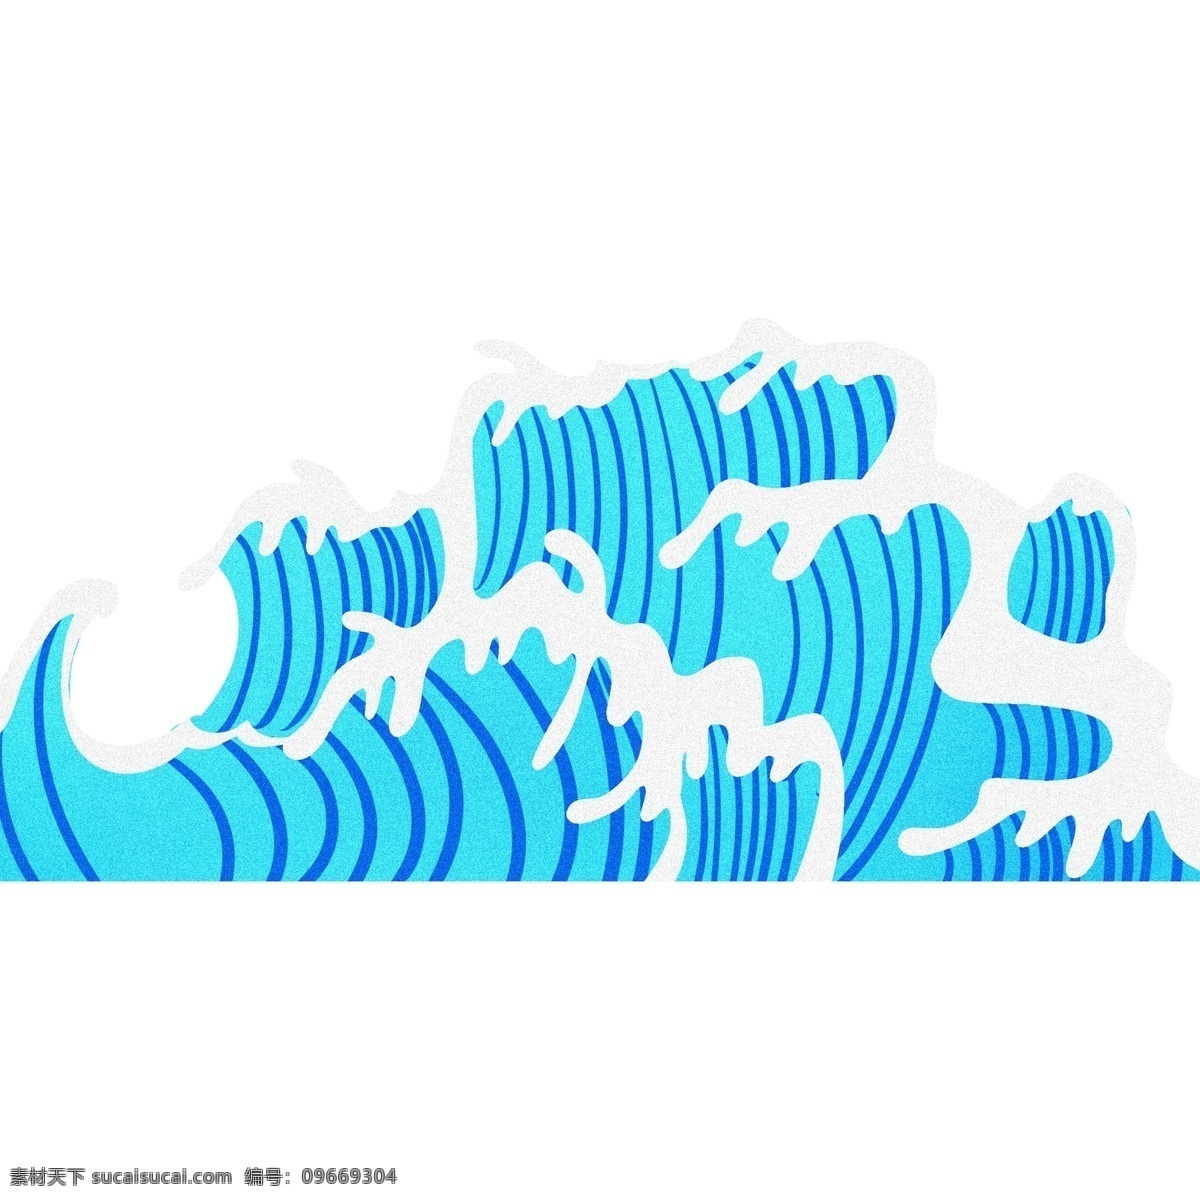 蓝色 浪花 图案 绘画 线条 海浪 卡通 彩色 小清新 创意 插画 手绘 元素 现代 简约 装饰